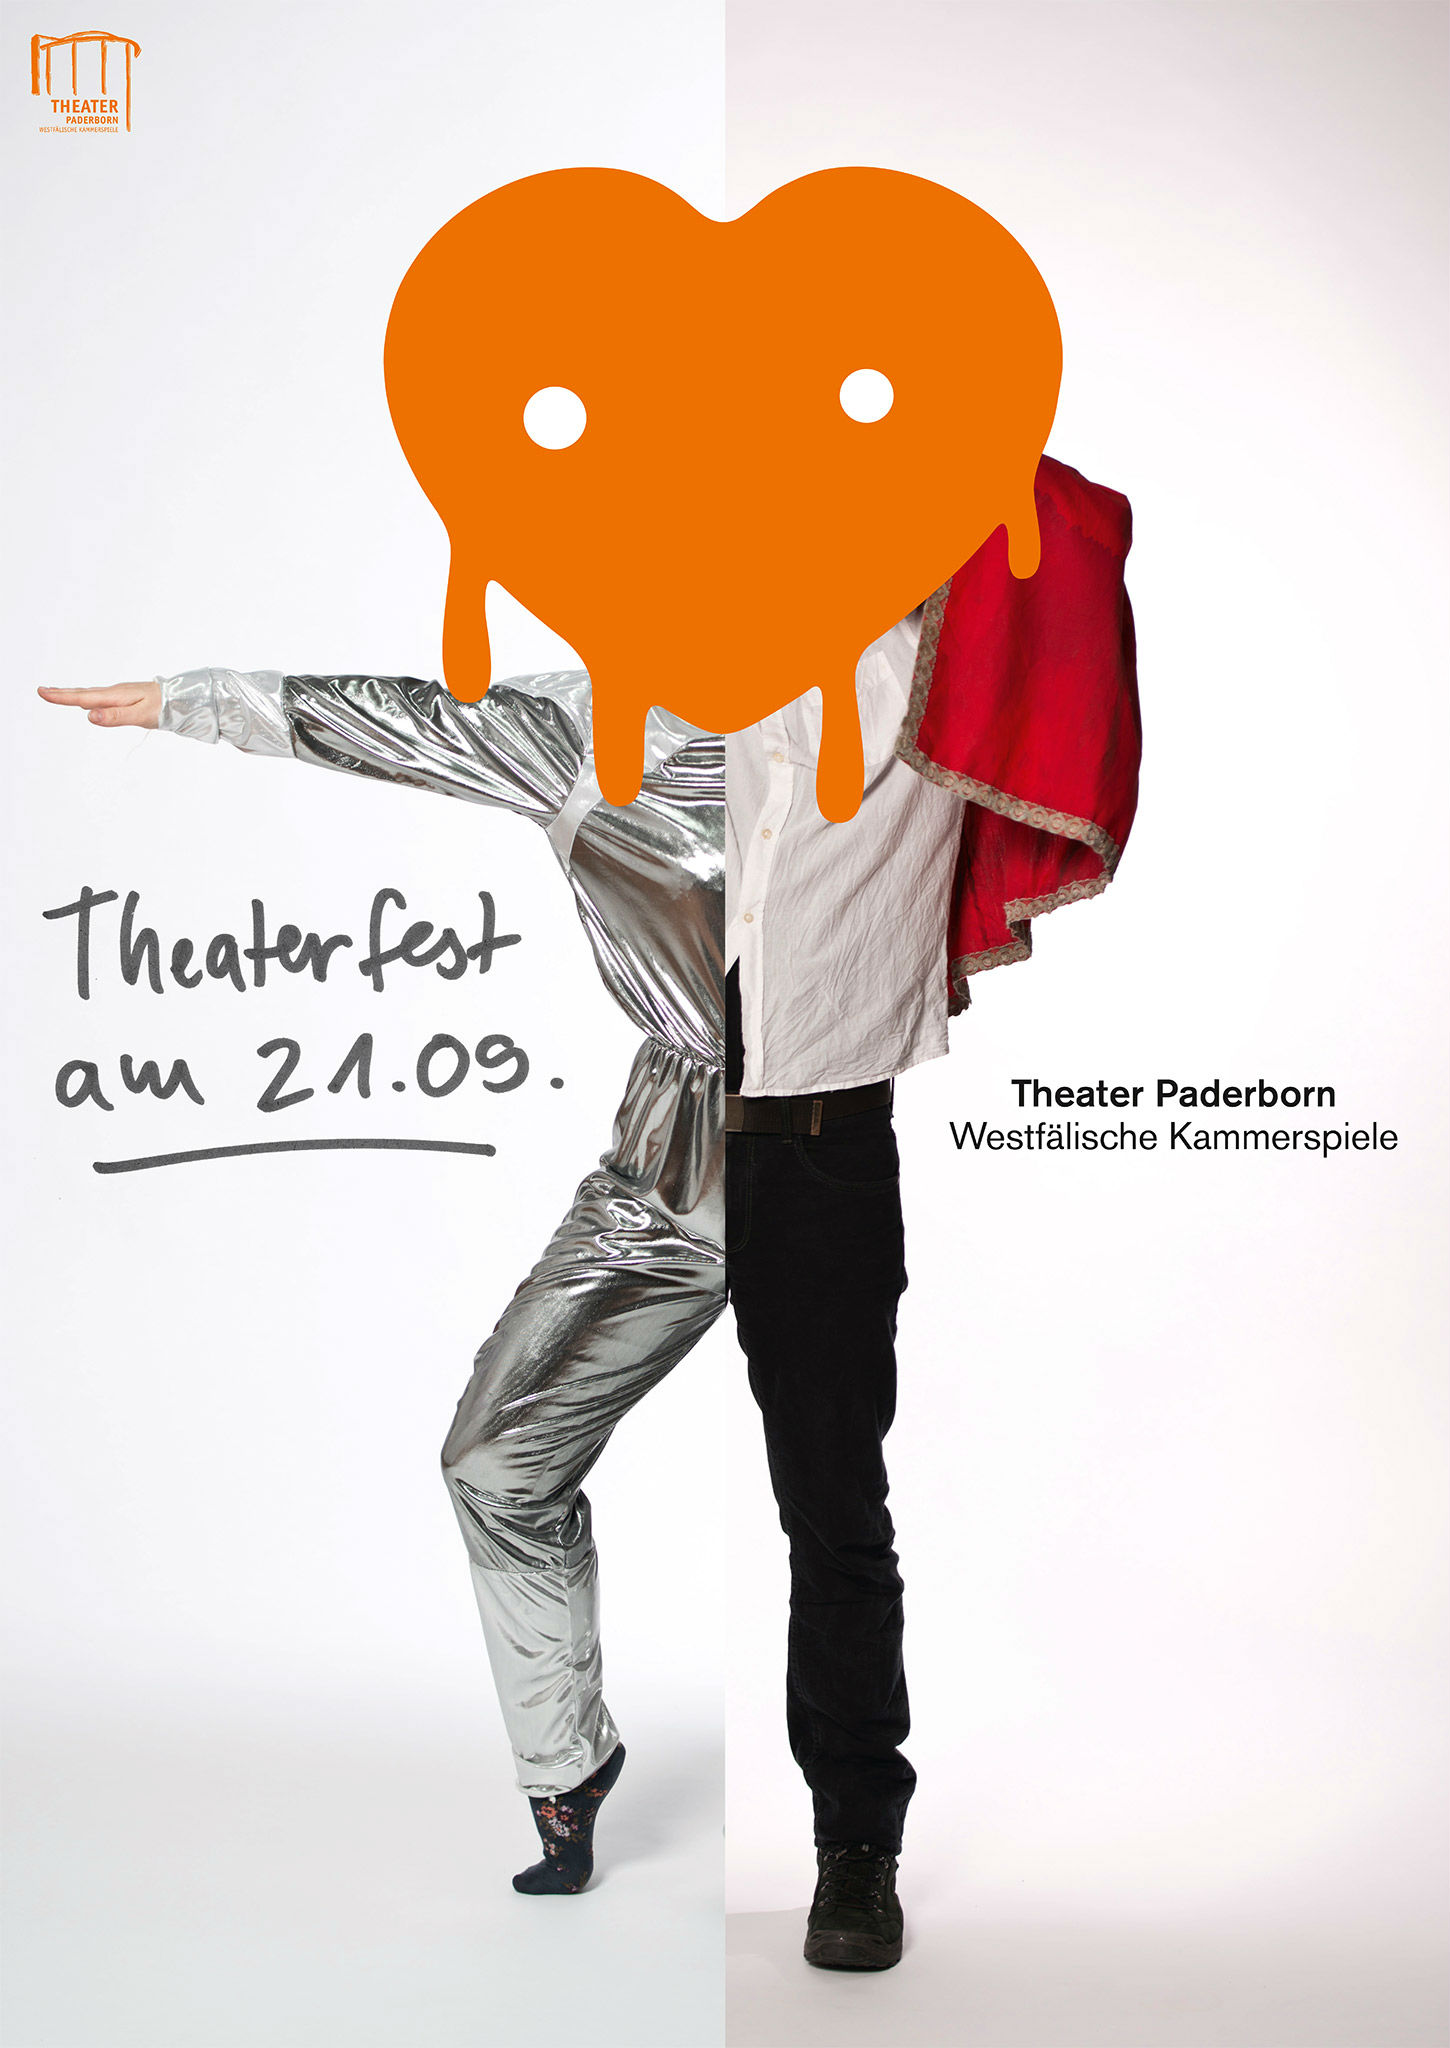 Kleon Medugorac Theater Paderborn “Theaterfest Posters” 